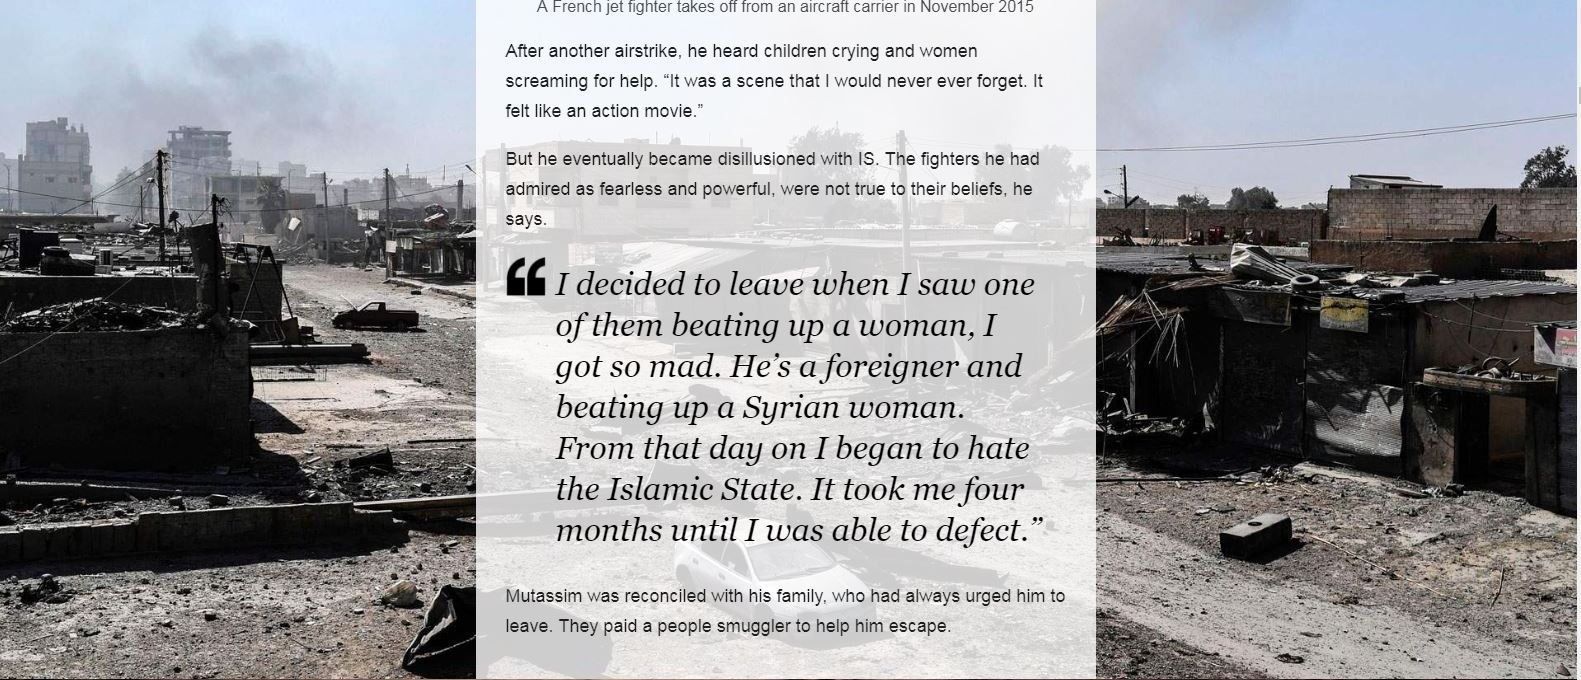 تحقيق مثير عن مخيم لنساء وأطفال هربوا من داعش